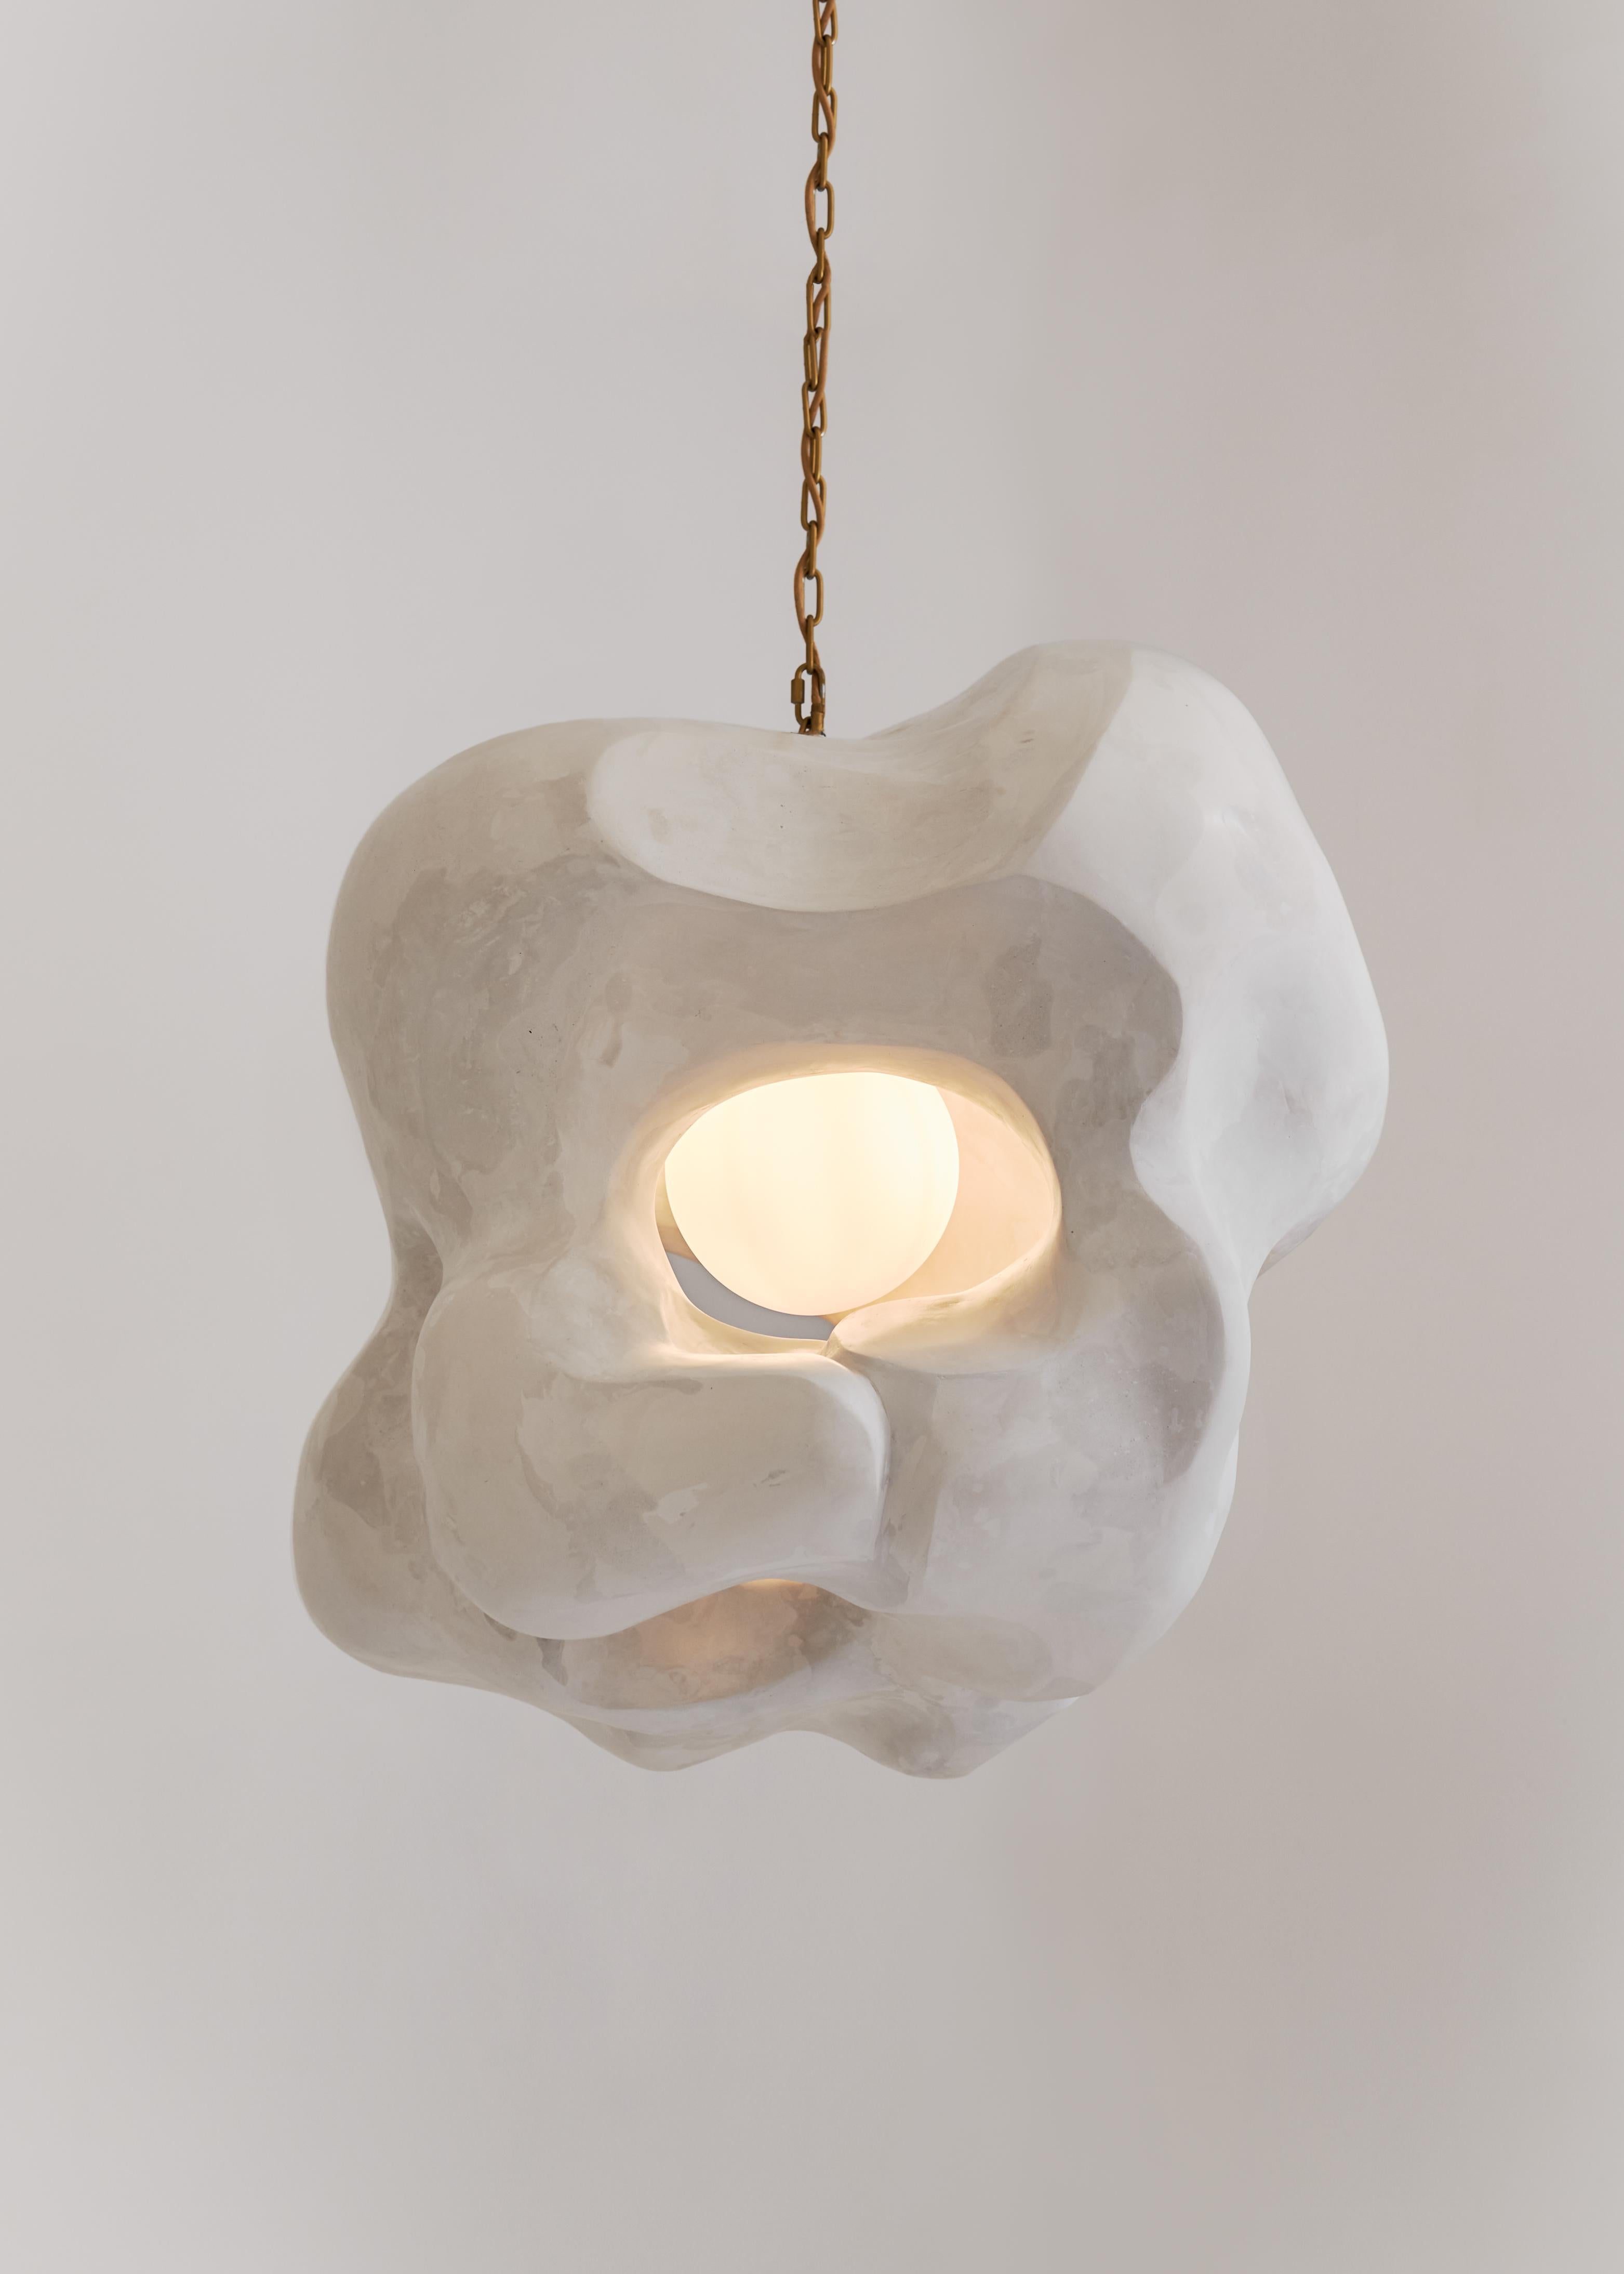 Organic Modern Contemporary Pendant Light, Sculptural Collectible Design 